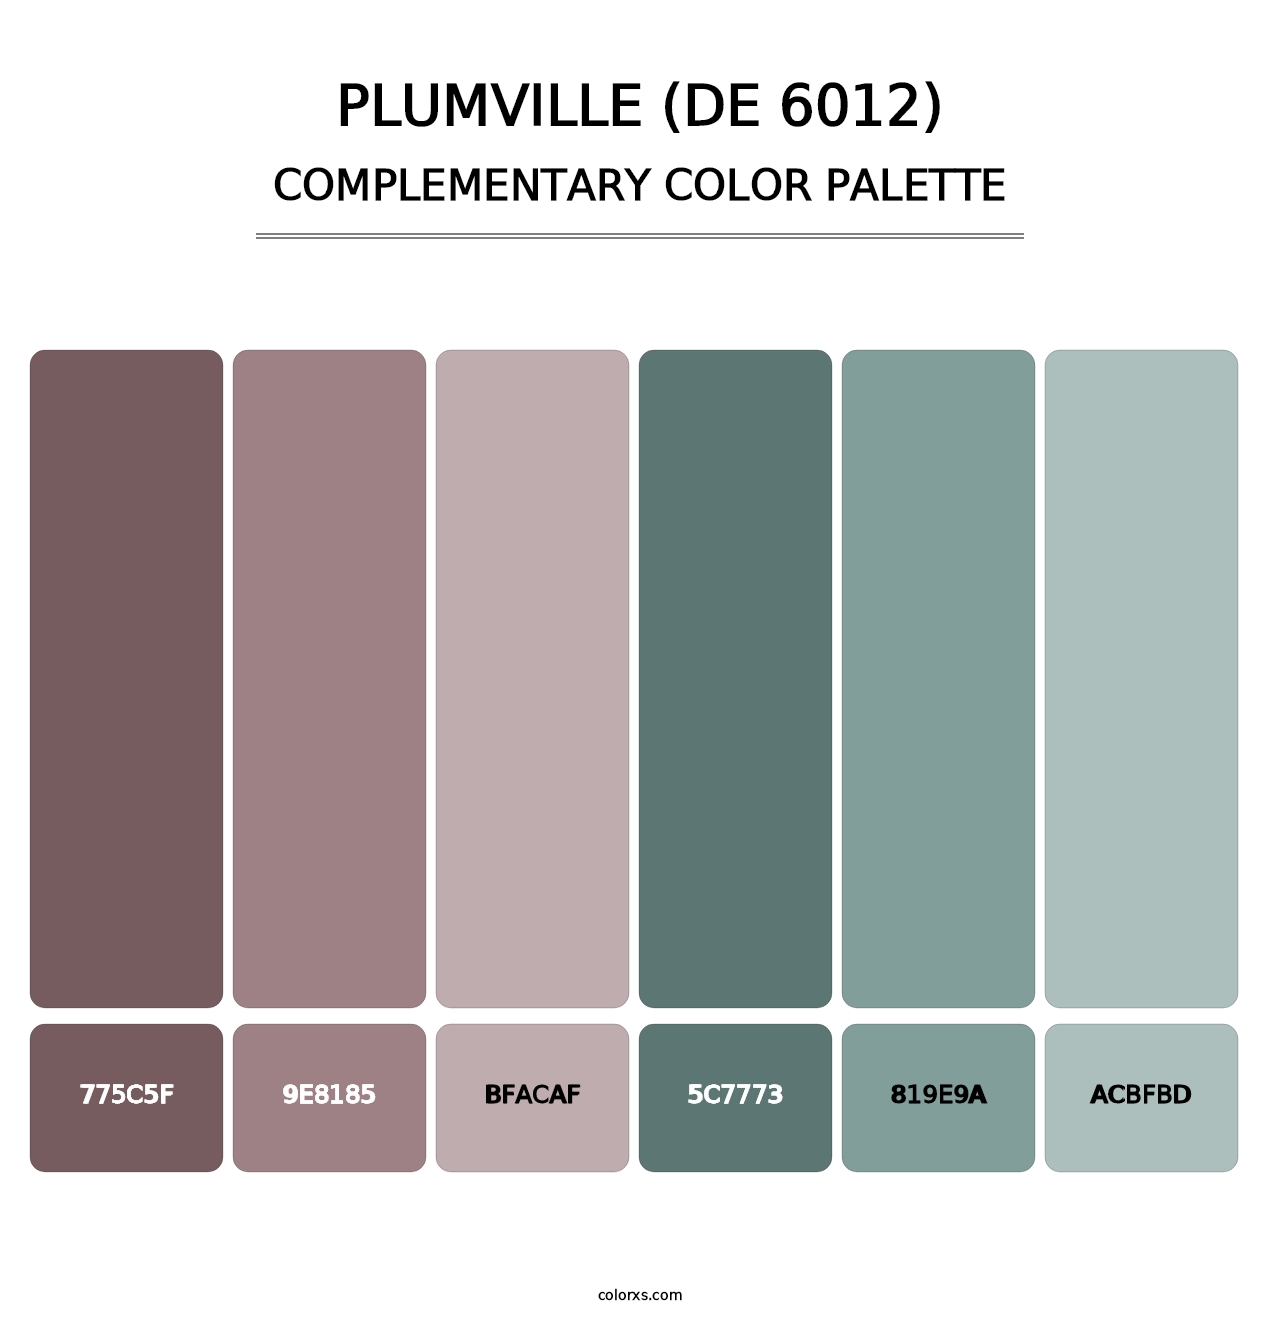 Plumville (DE 6012) - Complementary Color Palette